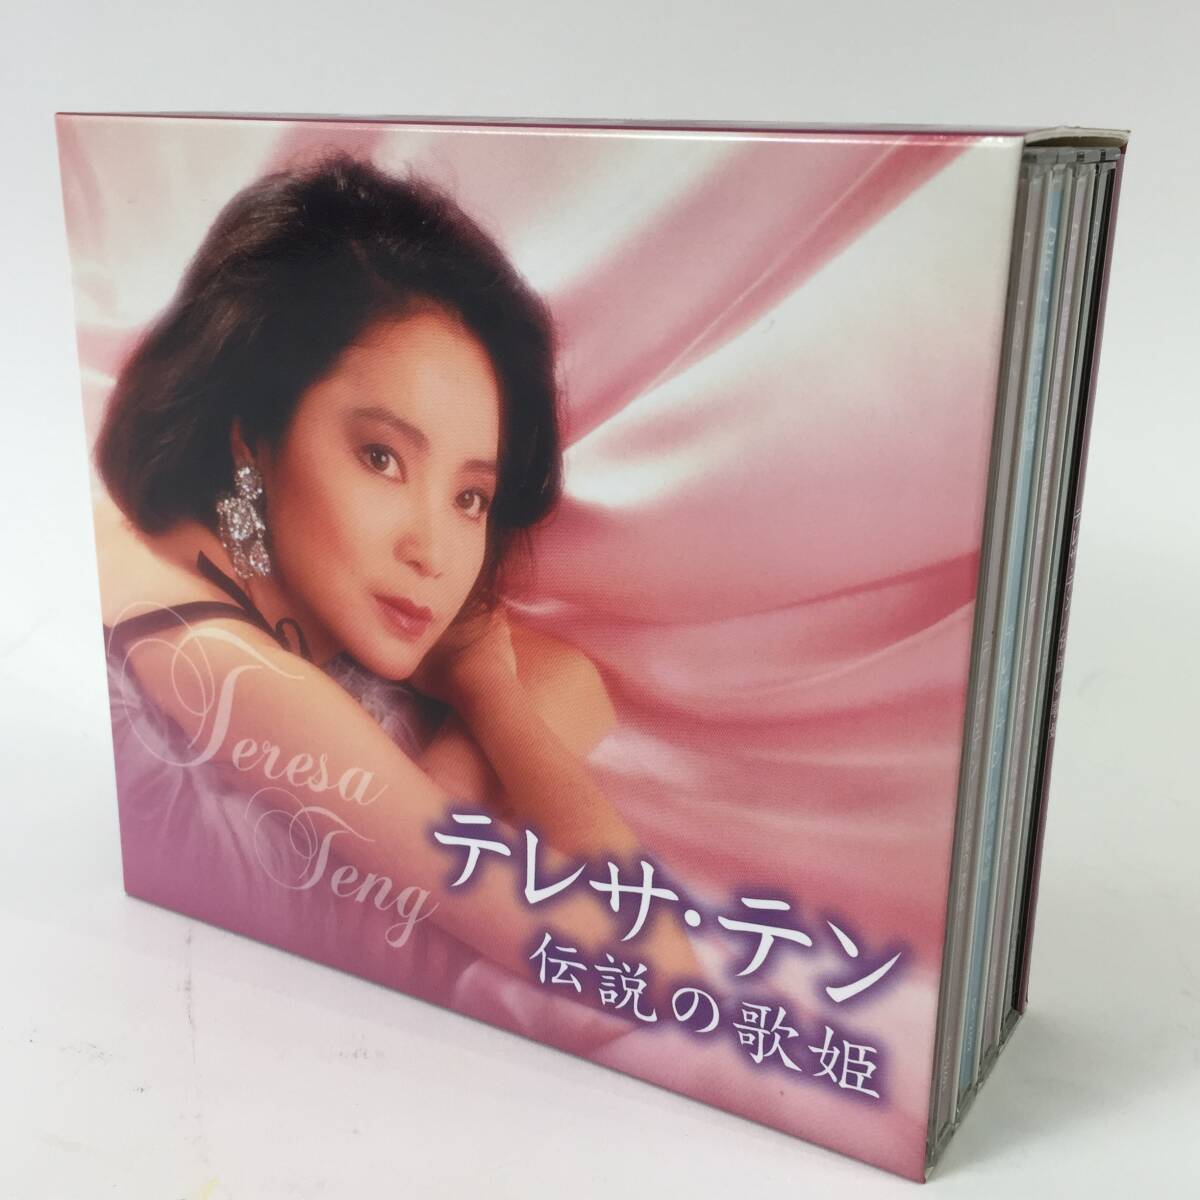 テレサテン 伝説の歌姫 CDボックス 特典DVD付 愛人 別れの予感 時の流れに身をまかせ 24c菊TK_画像1